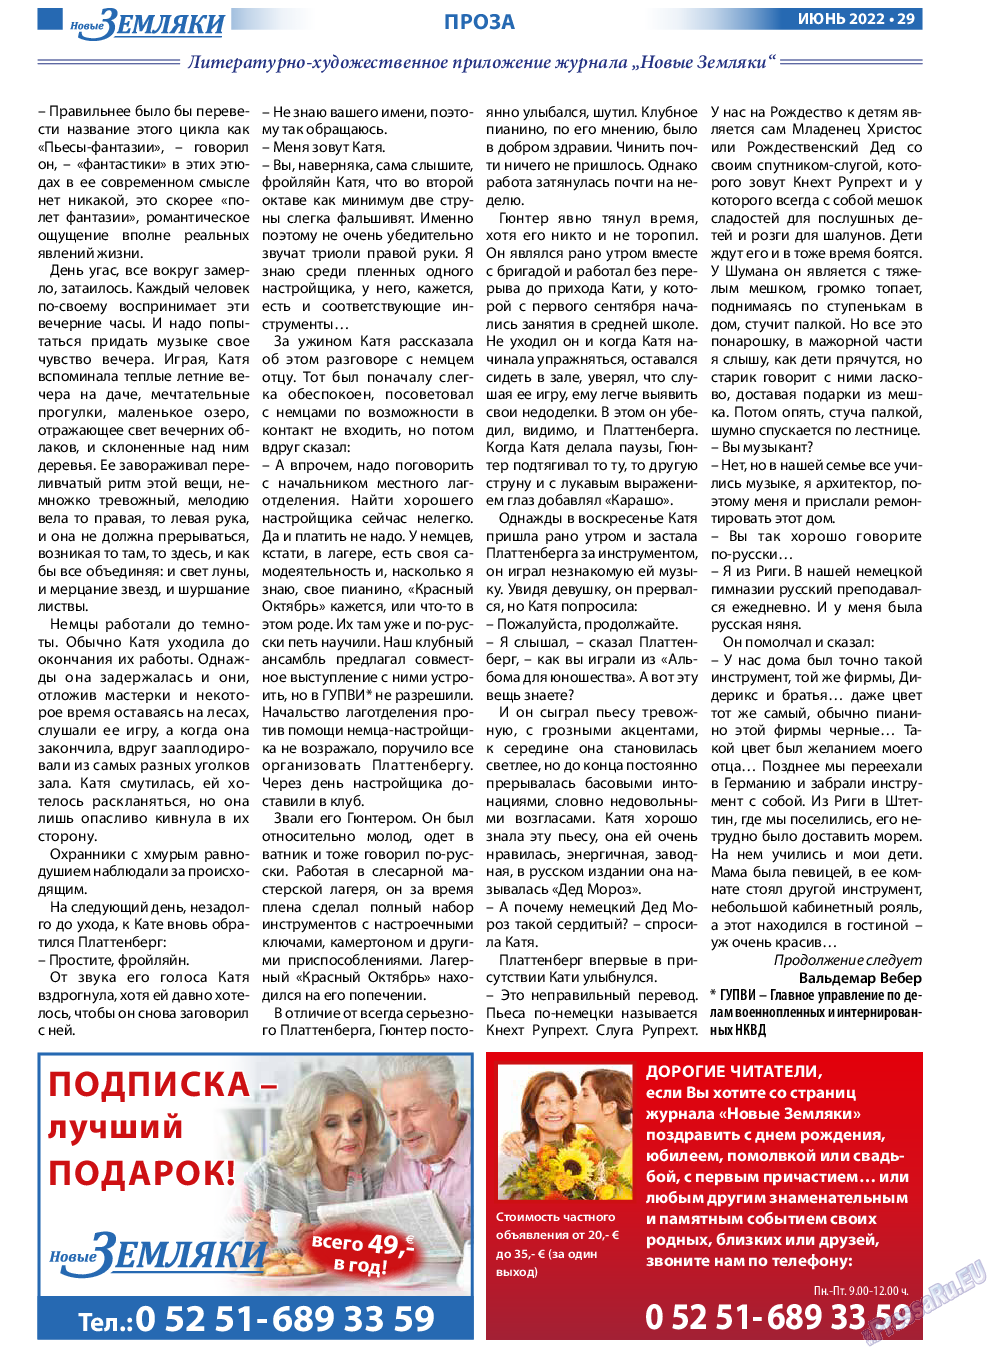 Новые Земляки, газета. 2022 №6 стр.29